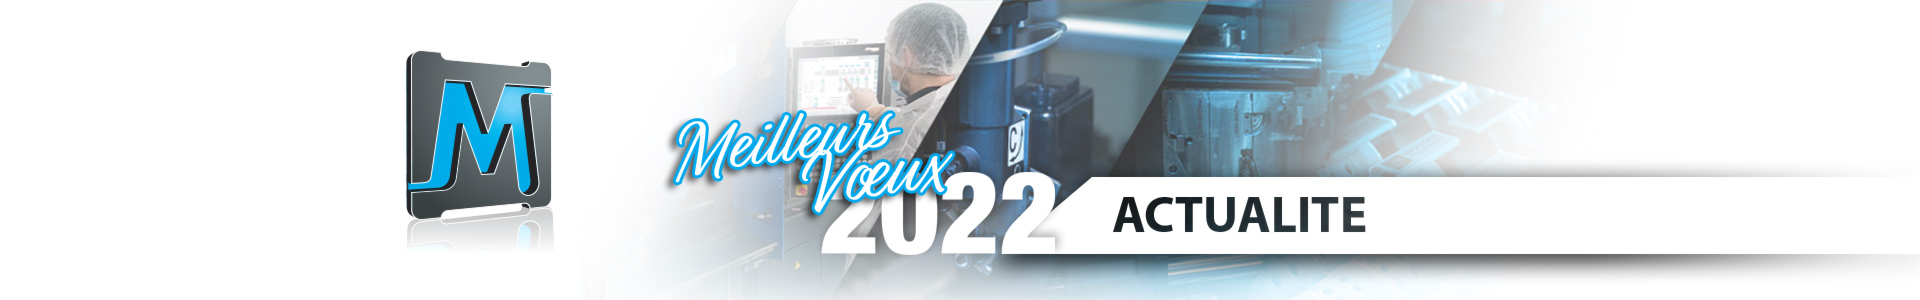 Actualité 2022 : Meridies vous souhaite une bonne année 2022 à tous et toutes